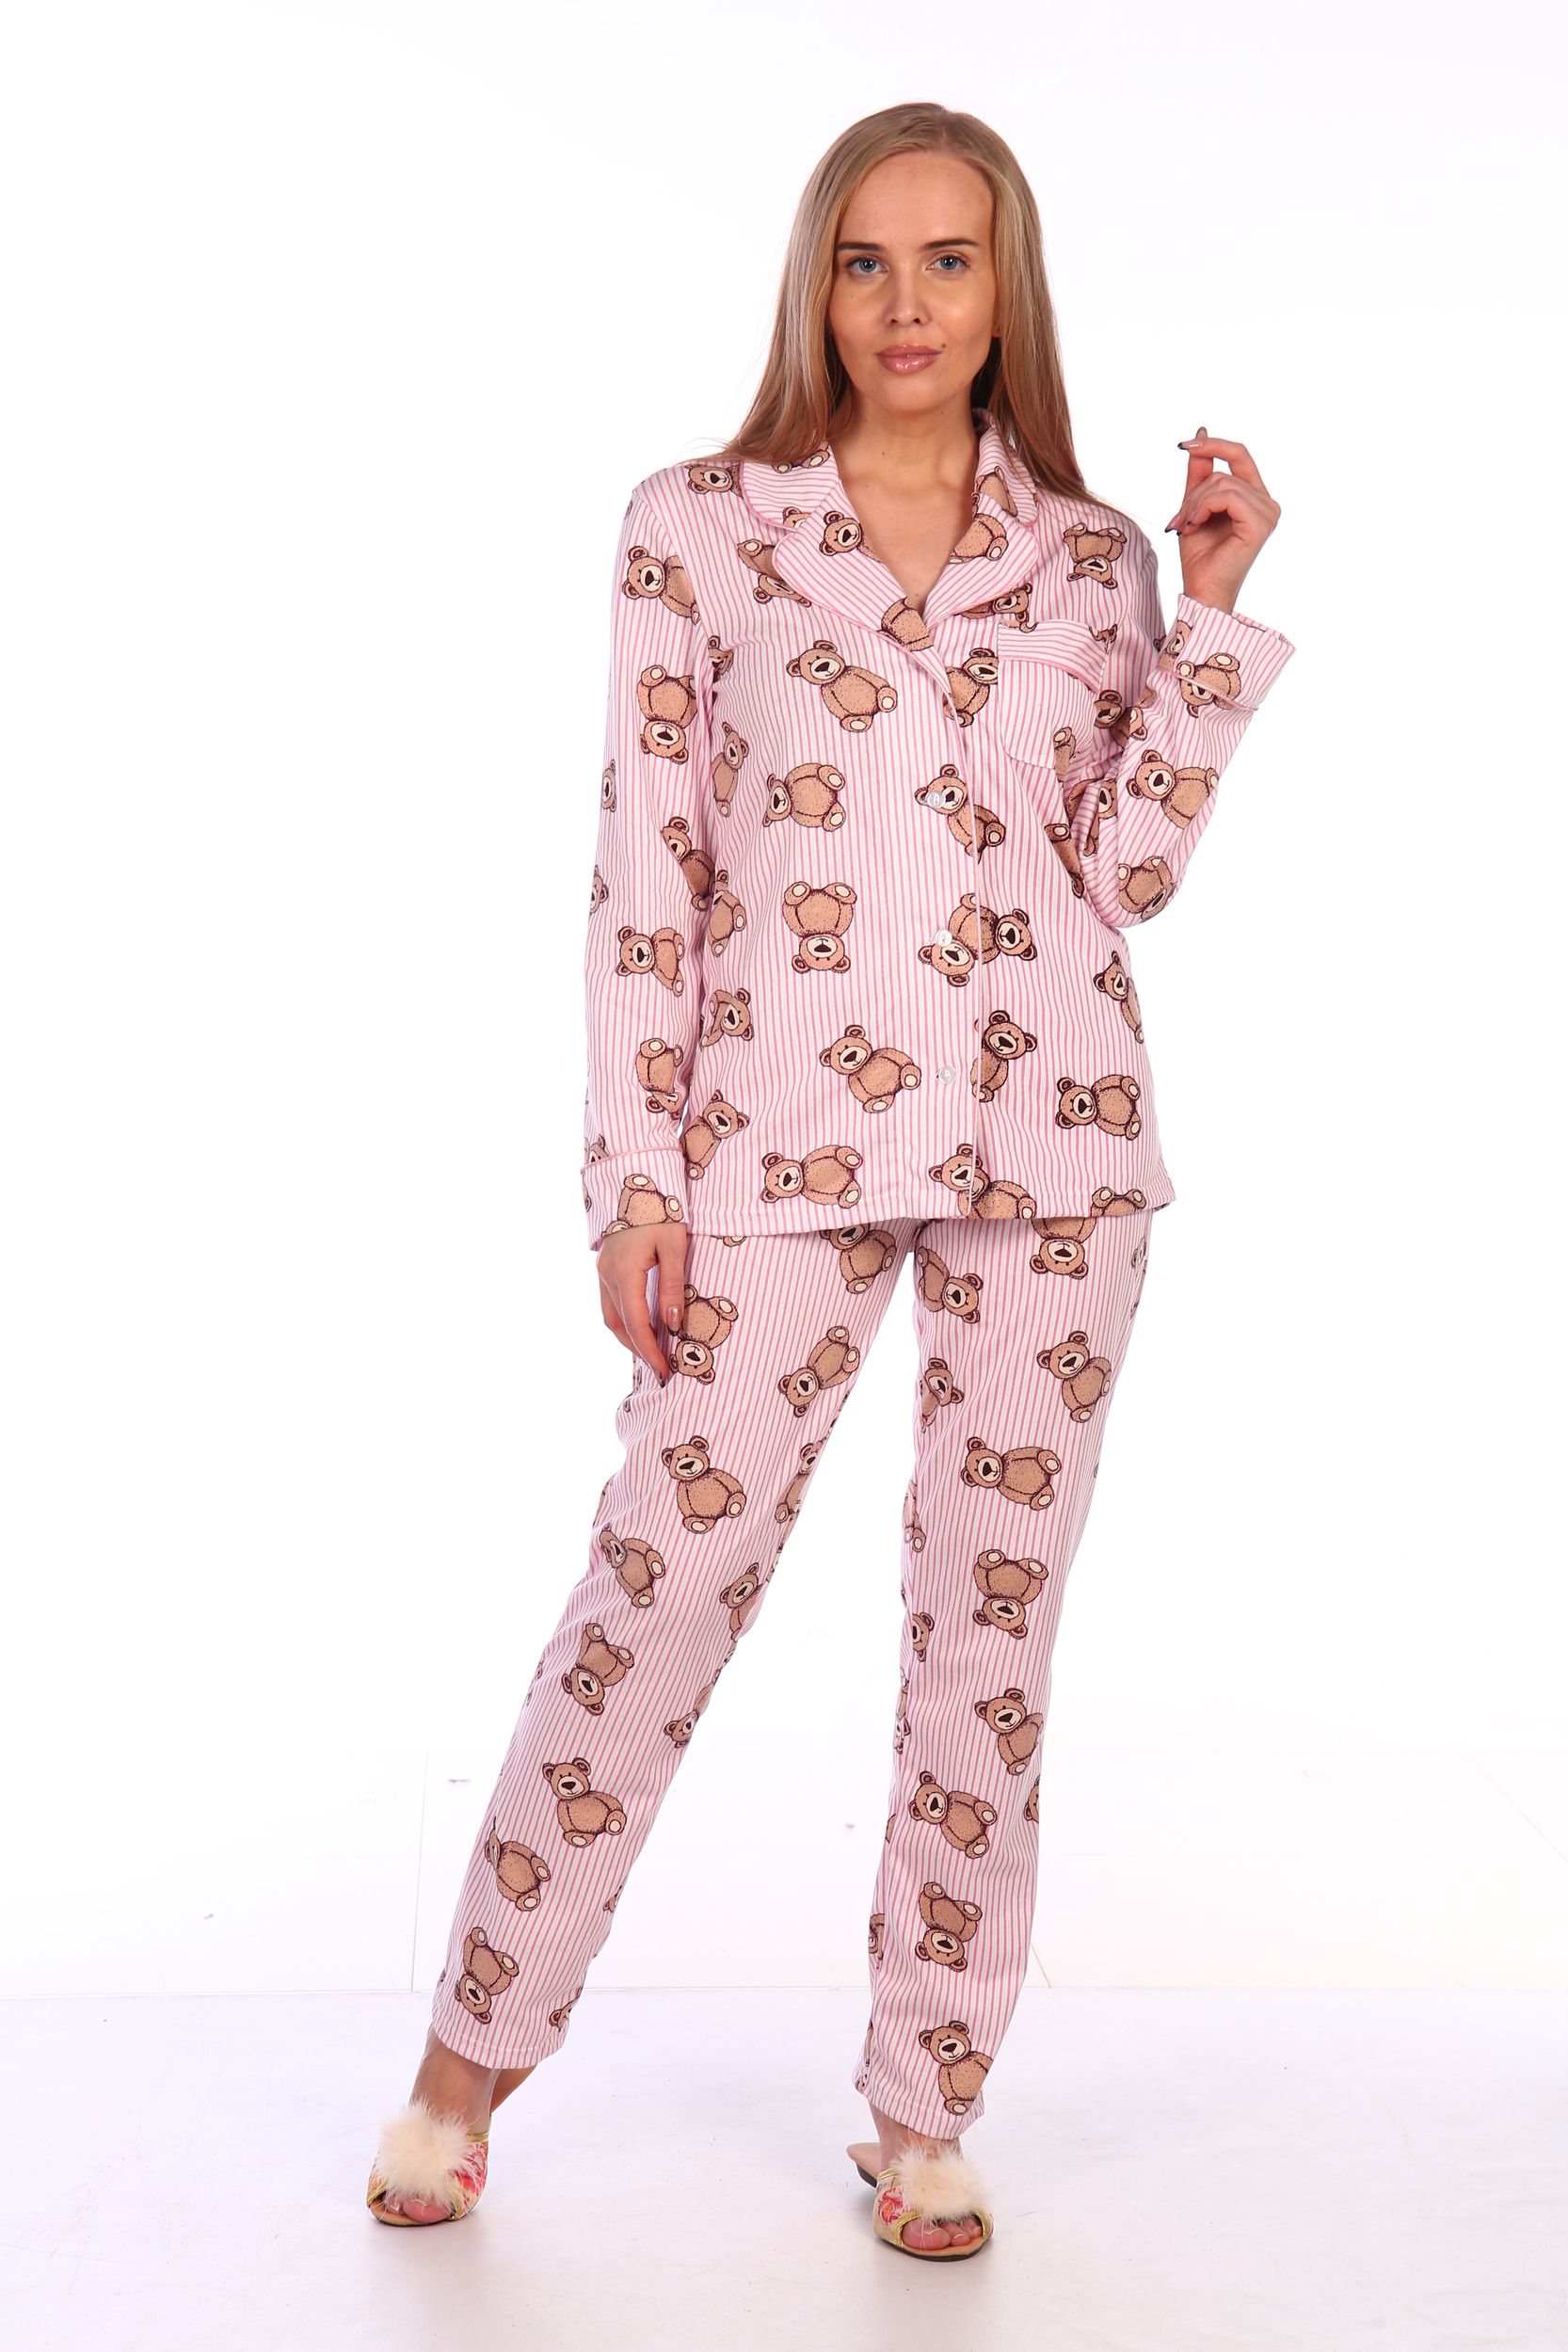 Валберис теплые пижамы. Пижама женская (модель FS 2253). Пижамы на вайлдберриз. Валберис шелковые пижамы. Пижама женская вайлдбериес.